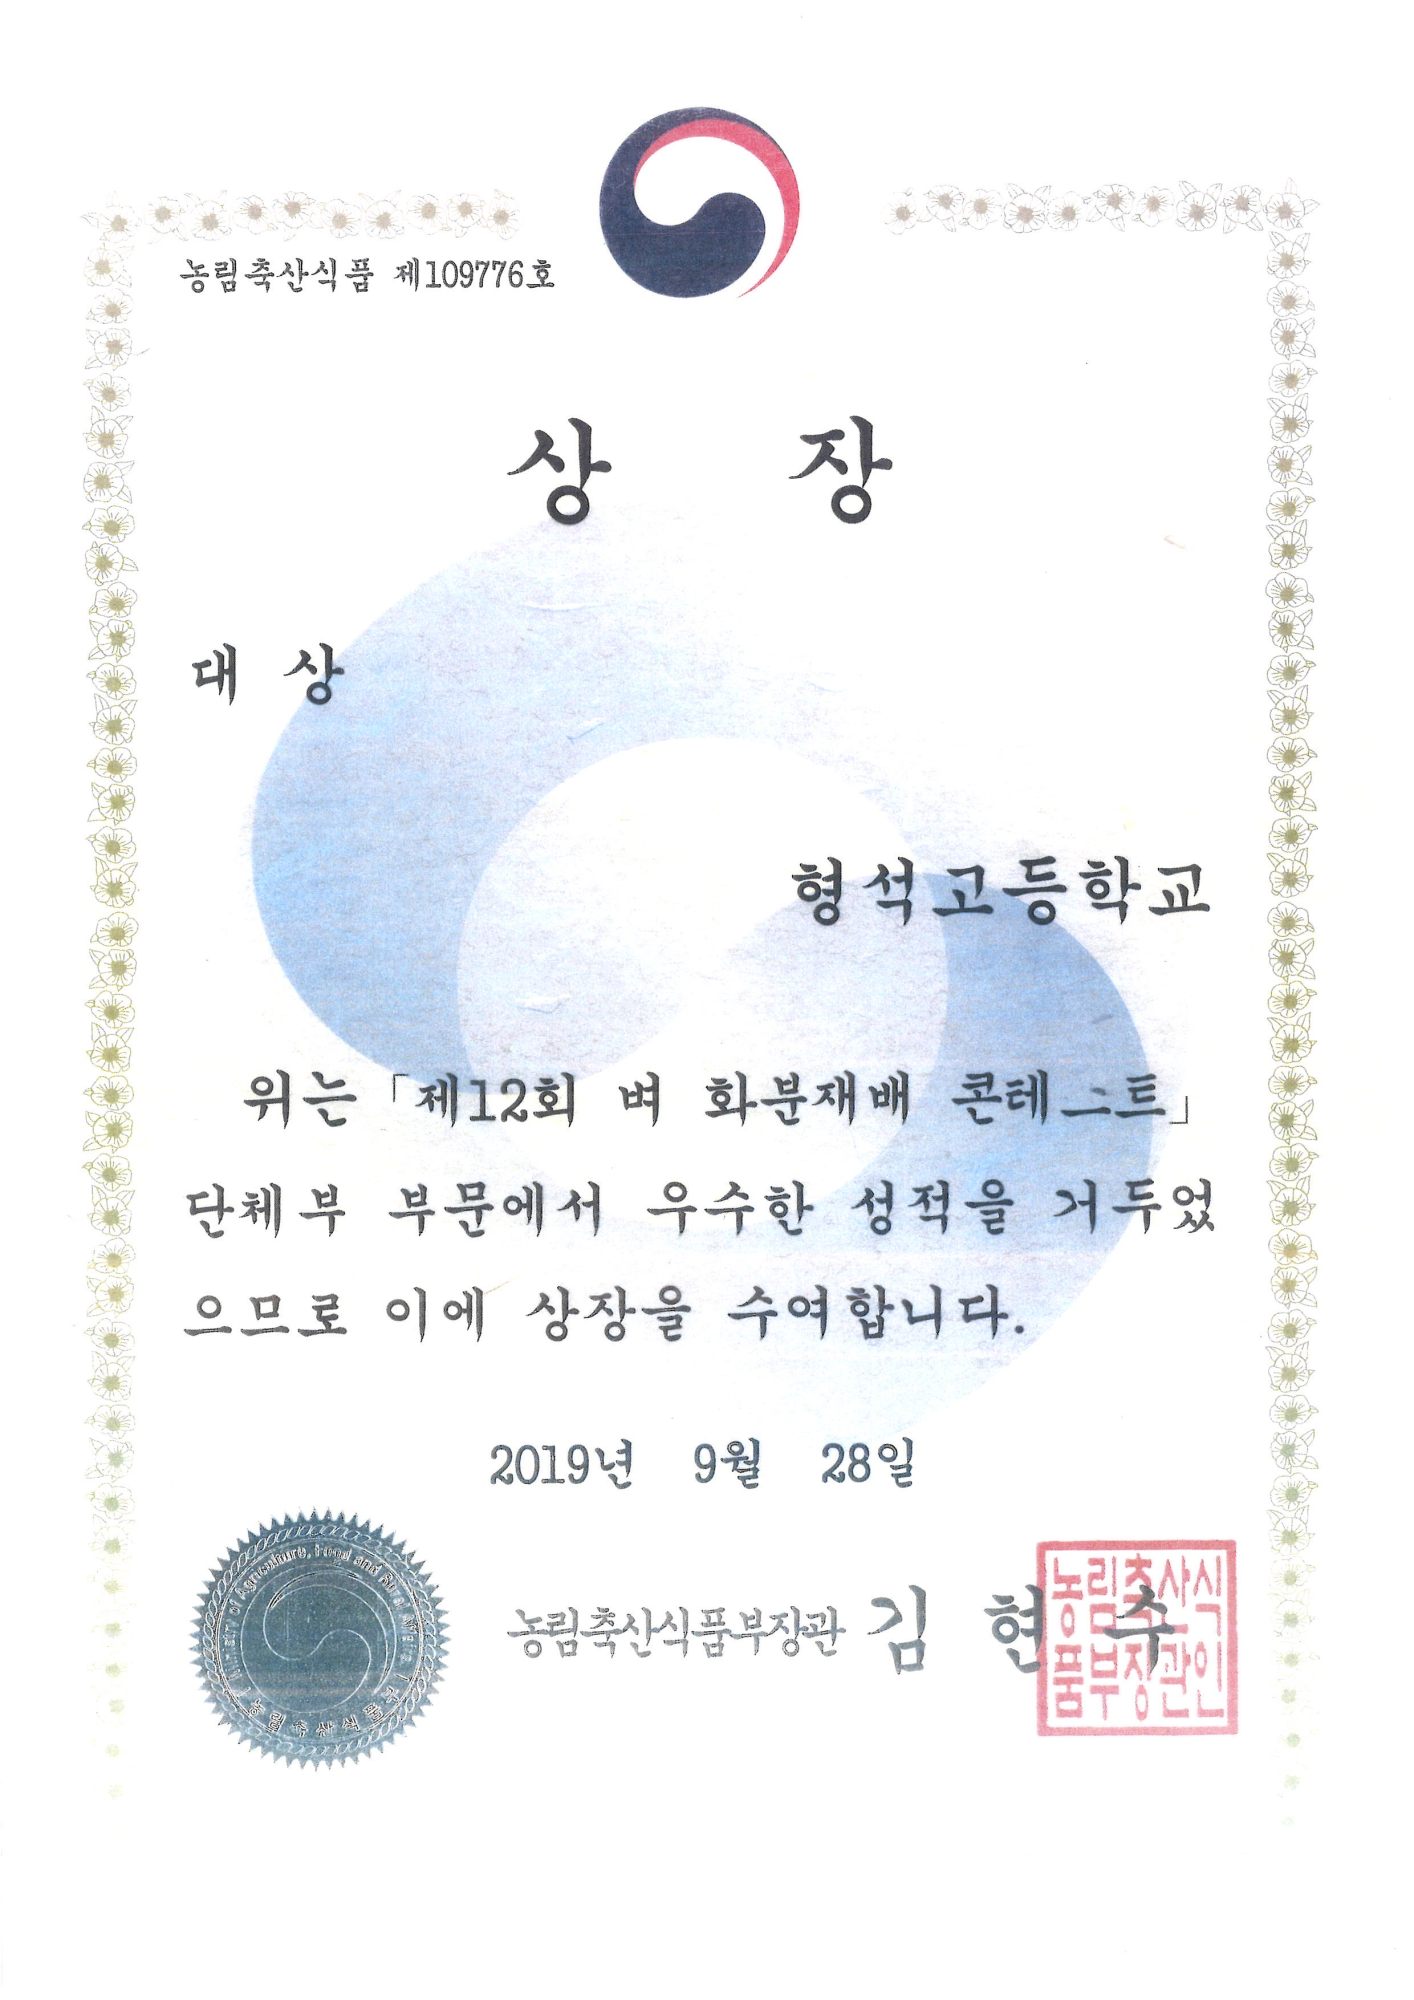 2019.09.28. 제12회 벼 화분재배 콘테스트 대상